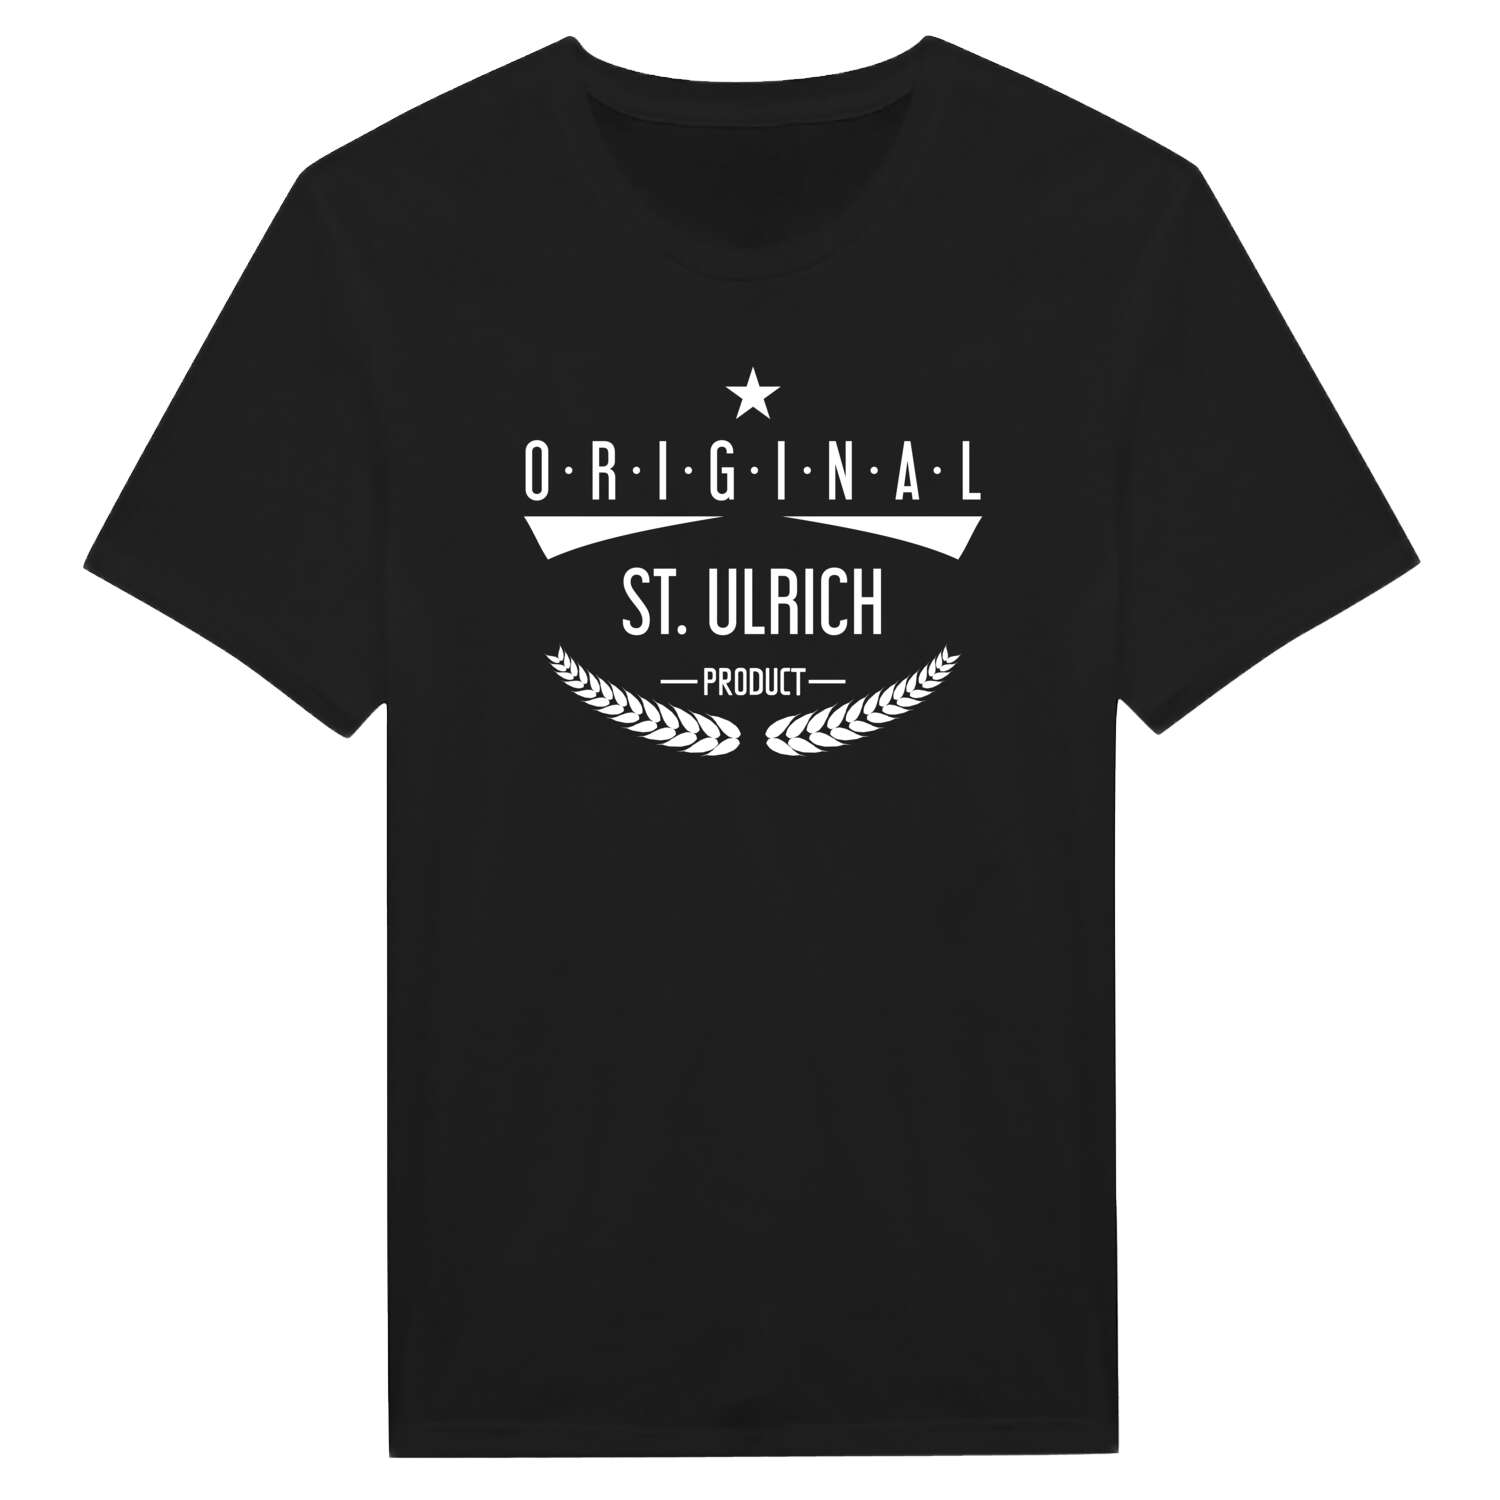 St. Ulrich T-Shirt »Original Product«